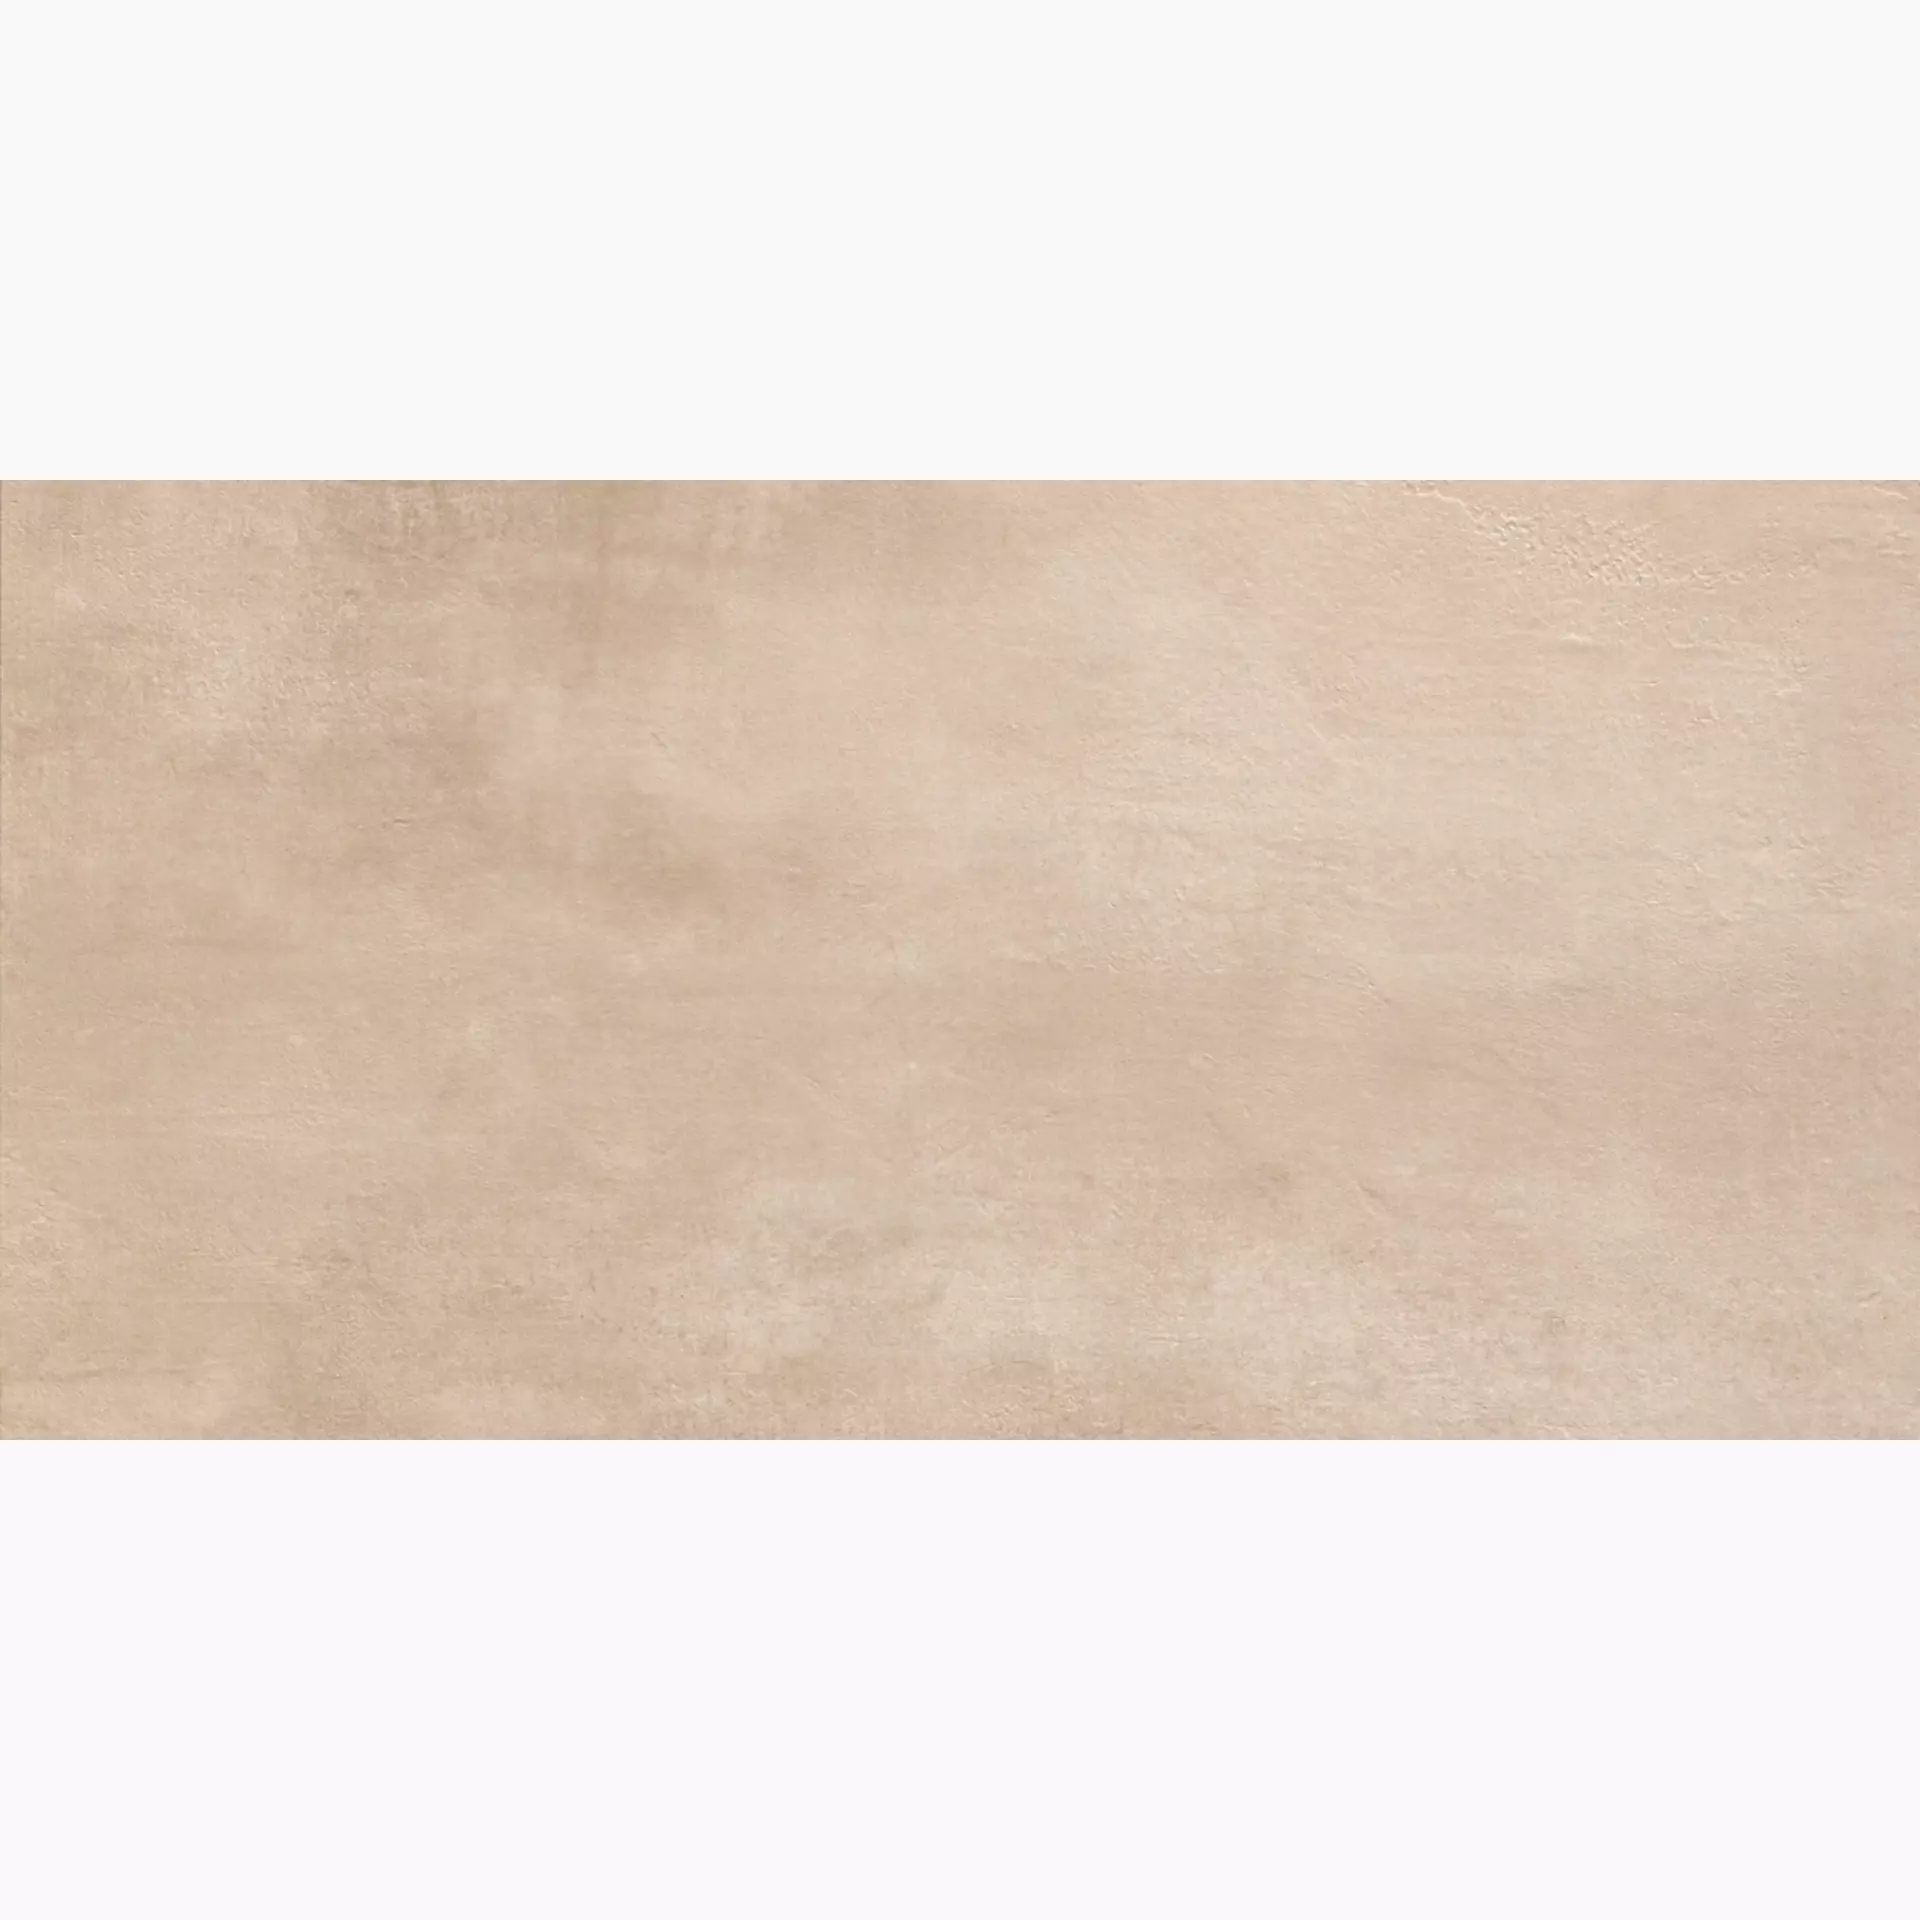 Casalgrande Beton Sand Naturale – Matt Sand 1640113 natur matt 75,5x151cm rektifiziert 10mm